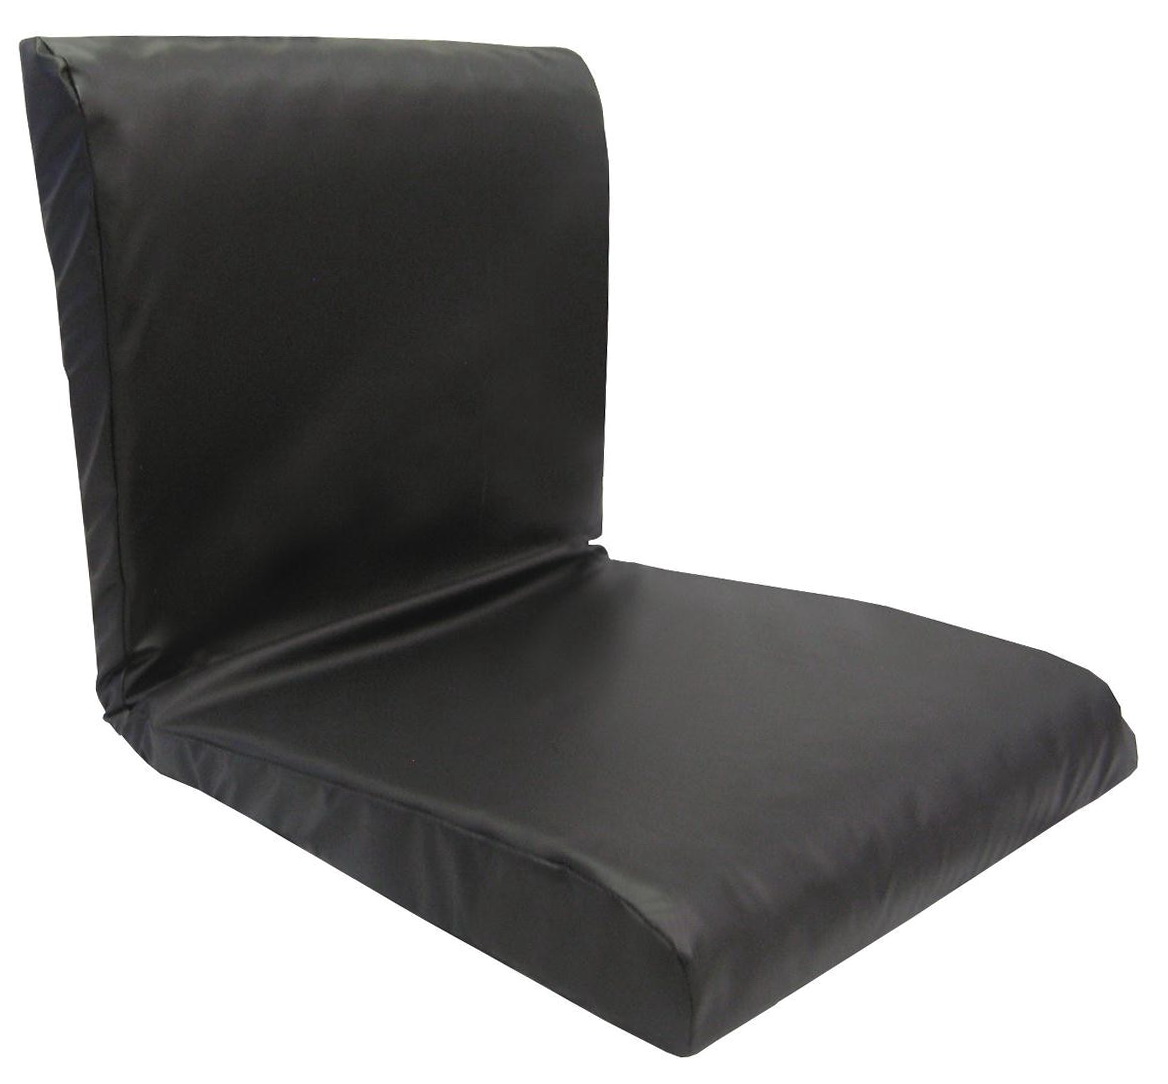 Foam Seat Cushion Material | Home Design Ideas